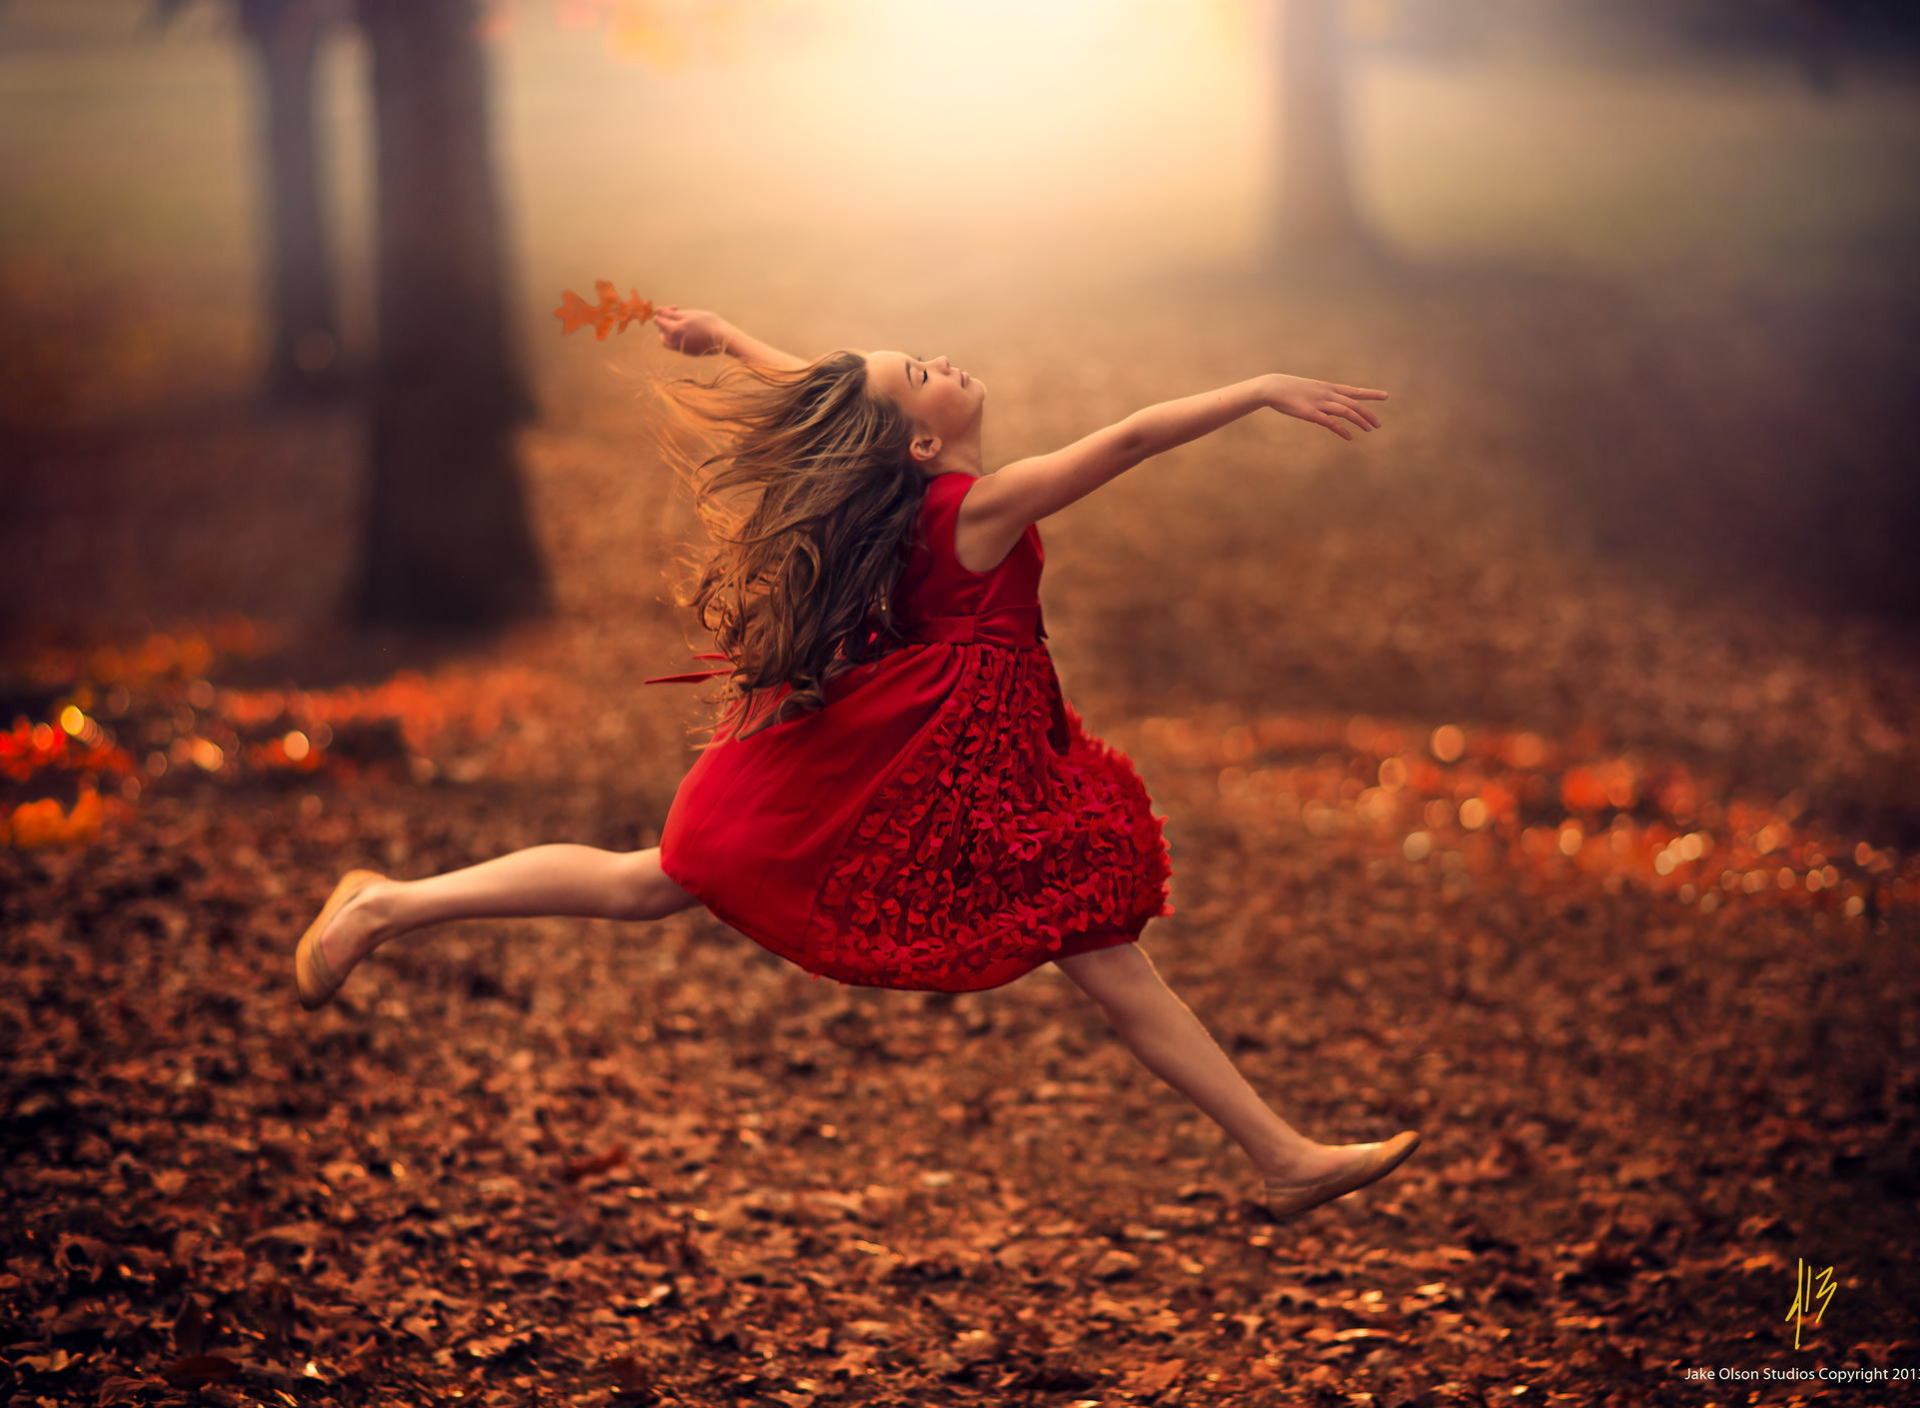 Песня бегу по дорожке. Джейк Олсон (Jake Olson), США. Девушка танцует. Девушка бежит в платье. Девушка танцует осень.